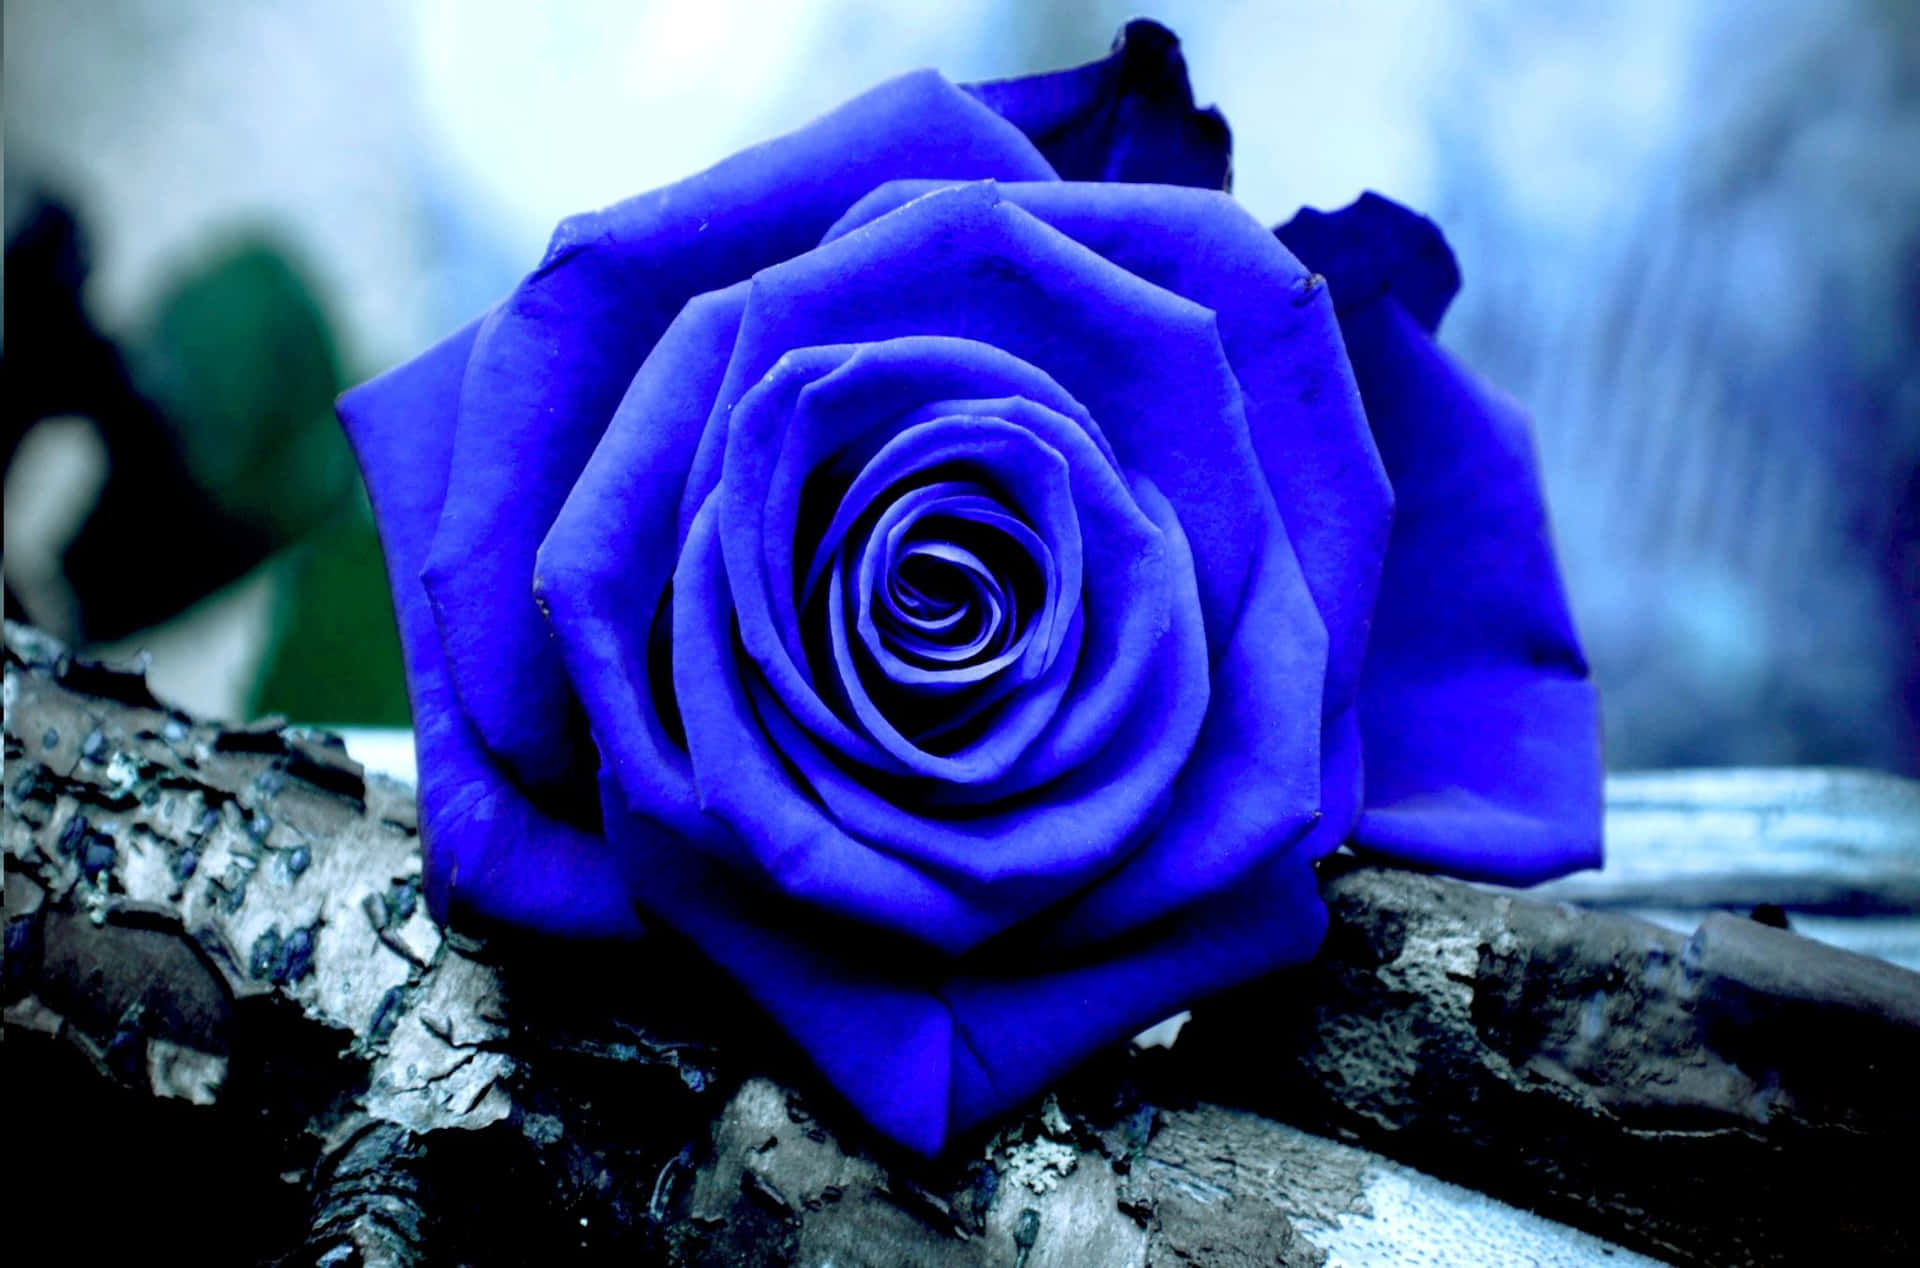 Dark Blue Rose Abstract Wallpaper